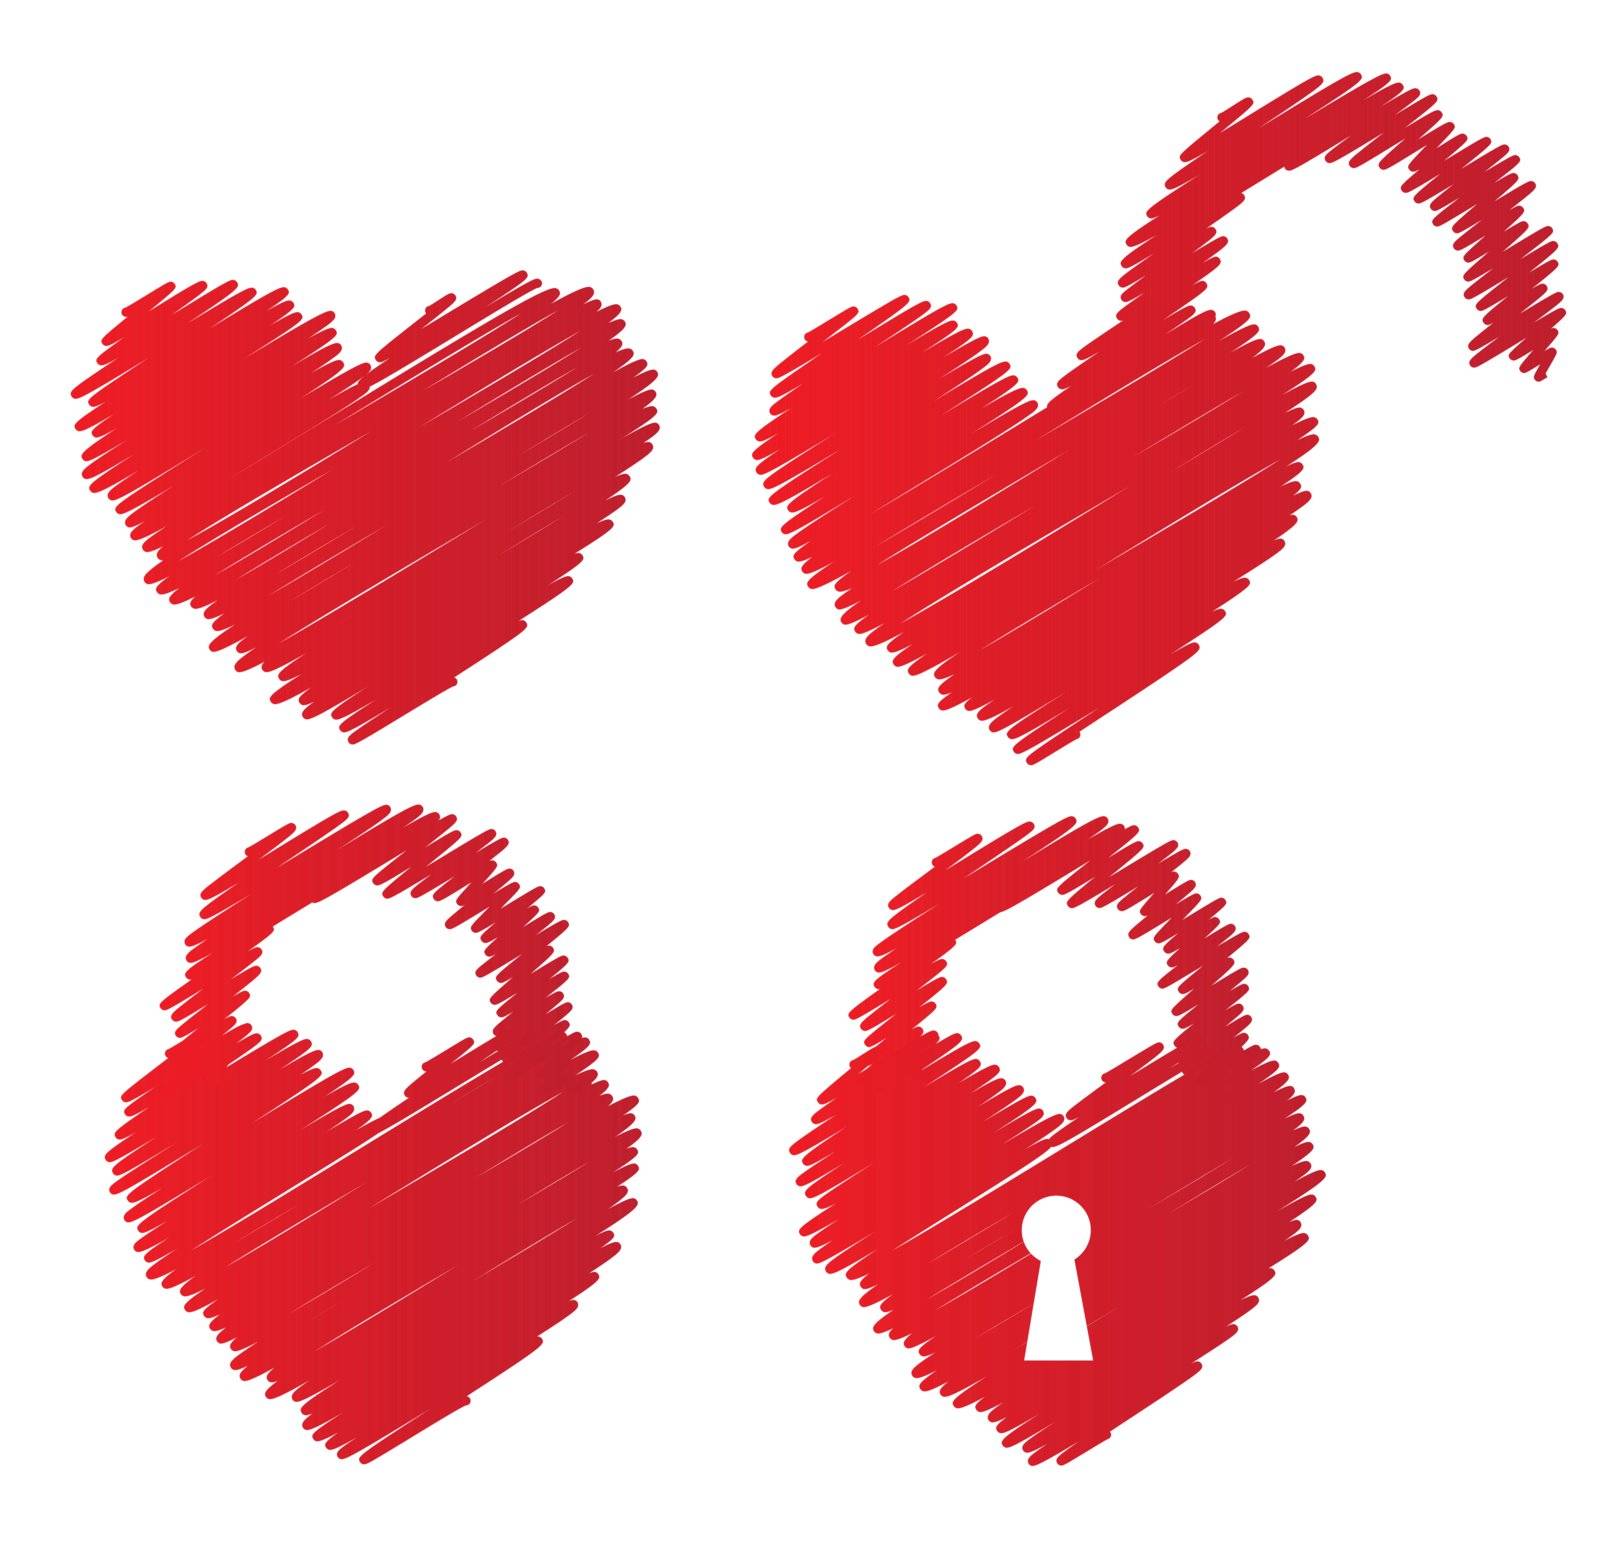 heart shaped padlocks over white background vector illustratin